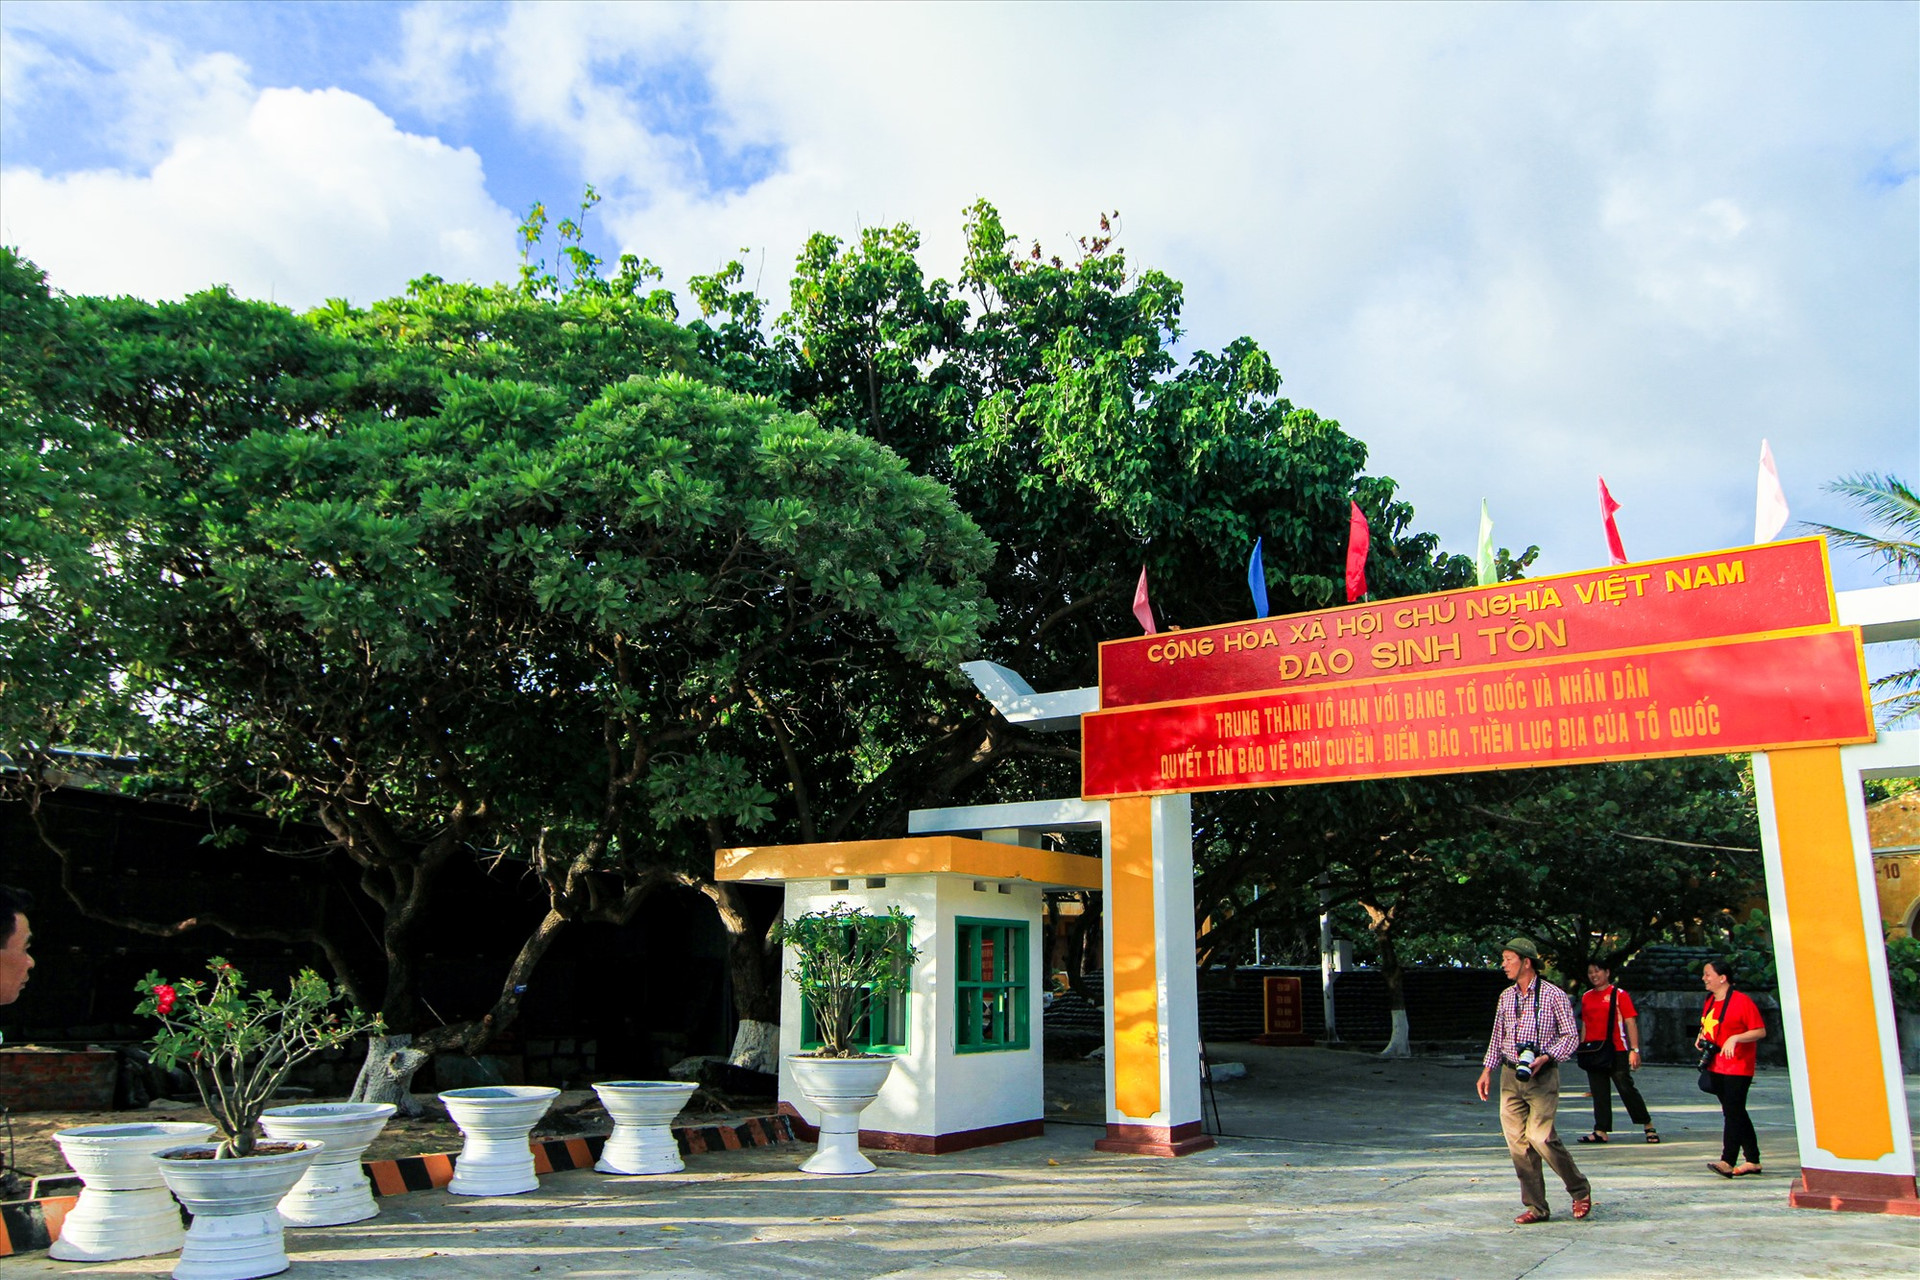 Đảo Sinh Tồn nổi bật bởi màu xanh rợp mát của các loại cây. Ảnh: T.C